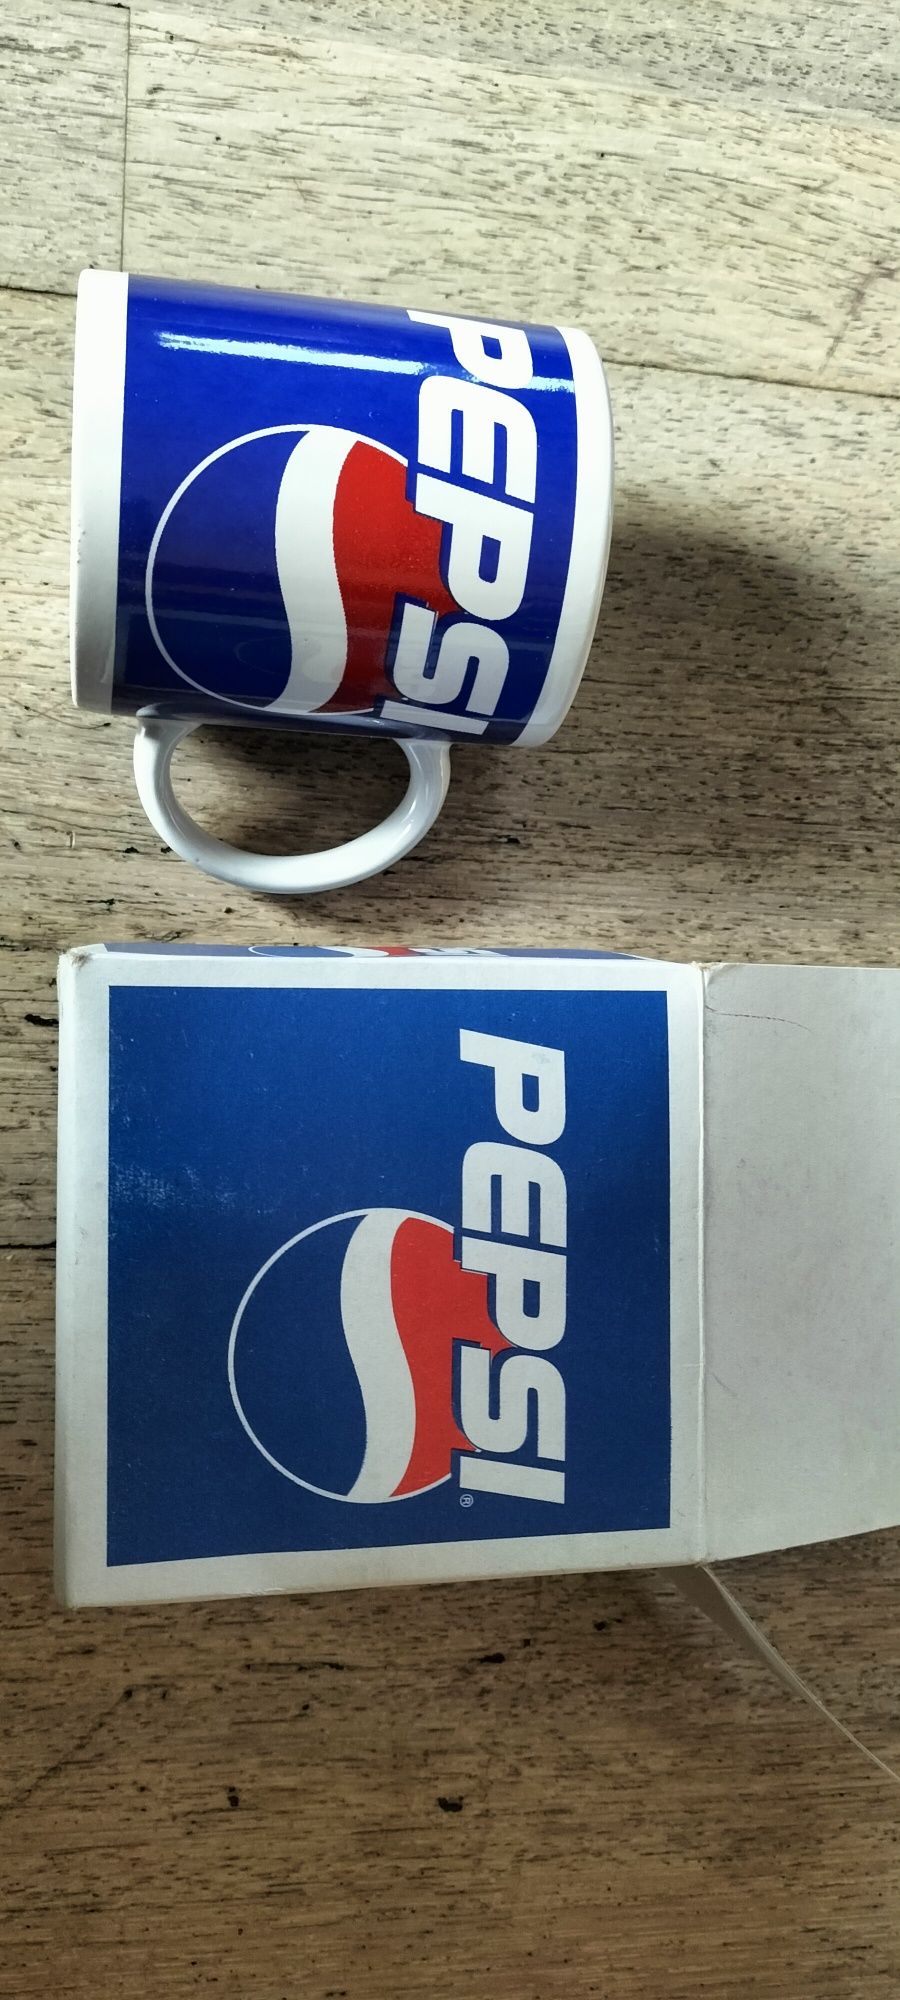 Piękny duży kubek ceramiczny Pepsi w opakowaniu grube ścianki